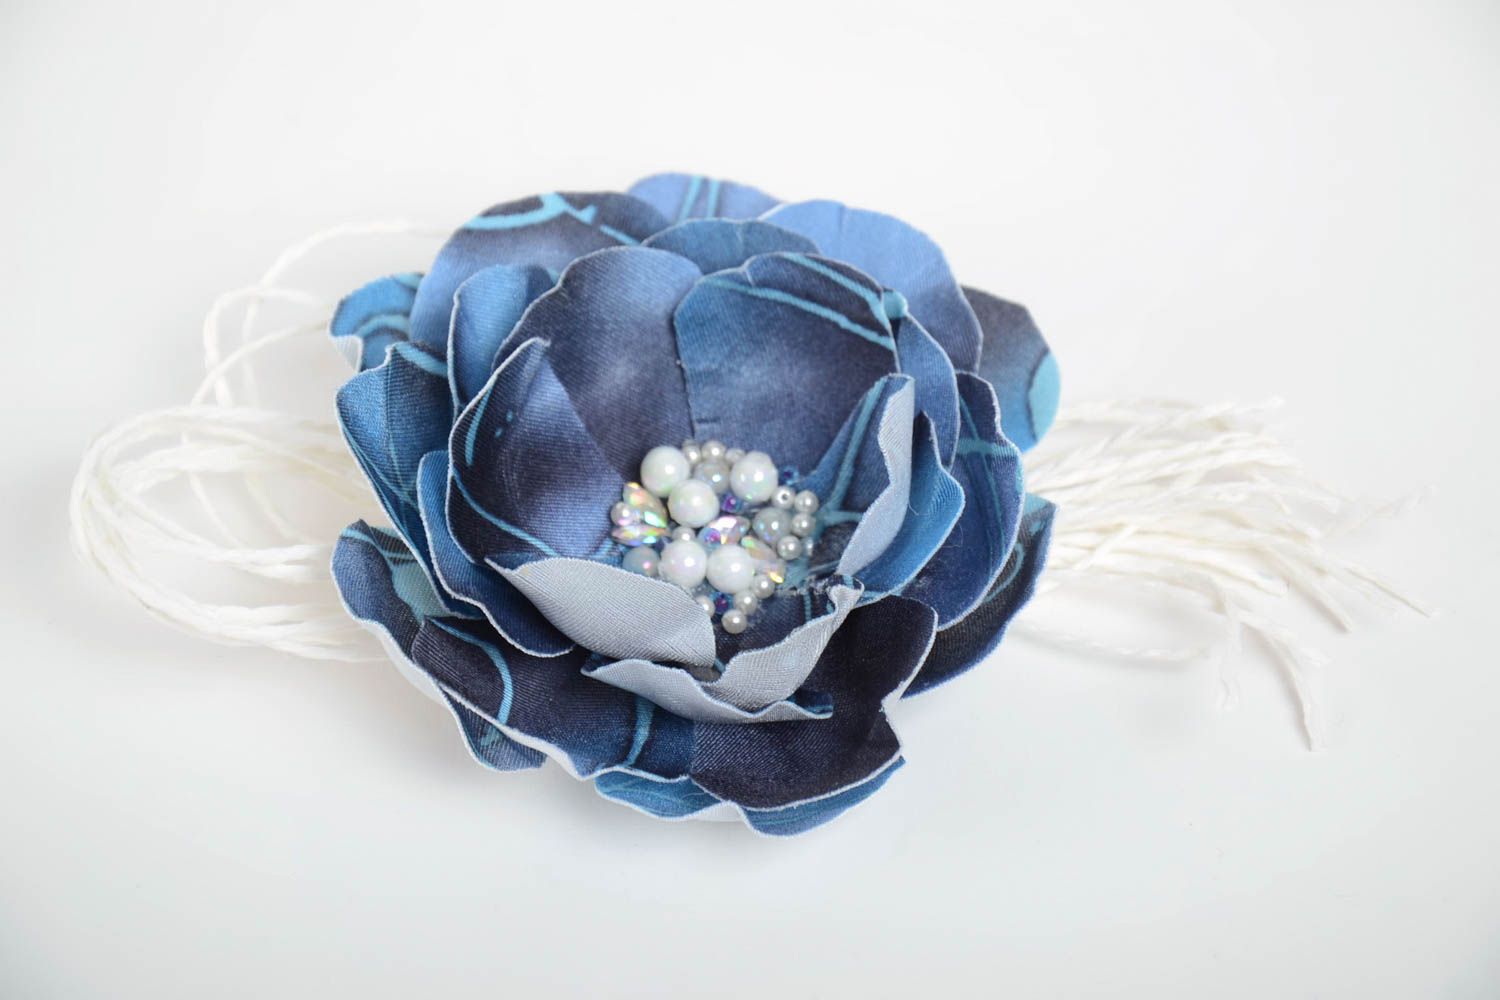 Брошь цветок из ткани синяя с бусинами красивая крупная стильная ручной работы фото 2